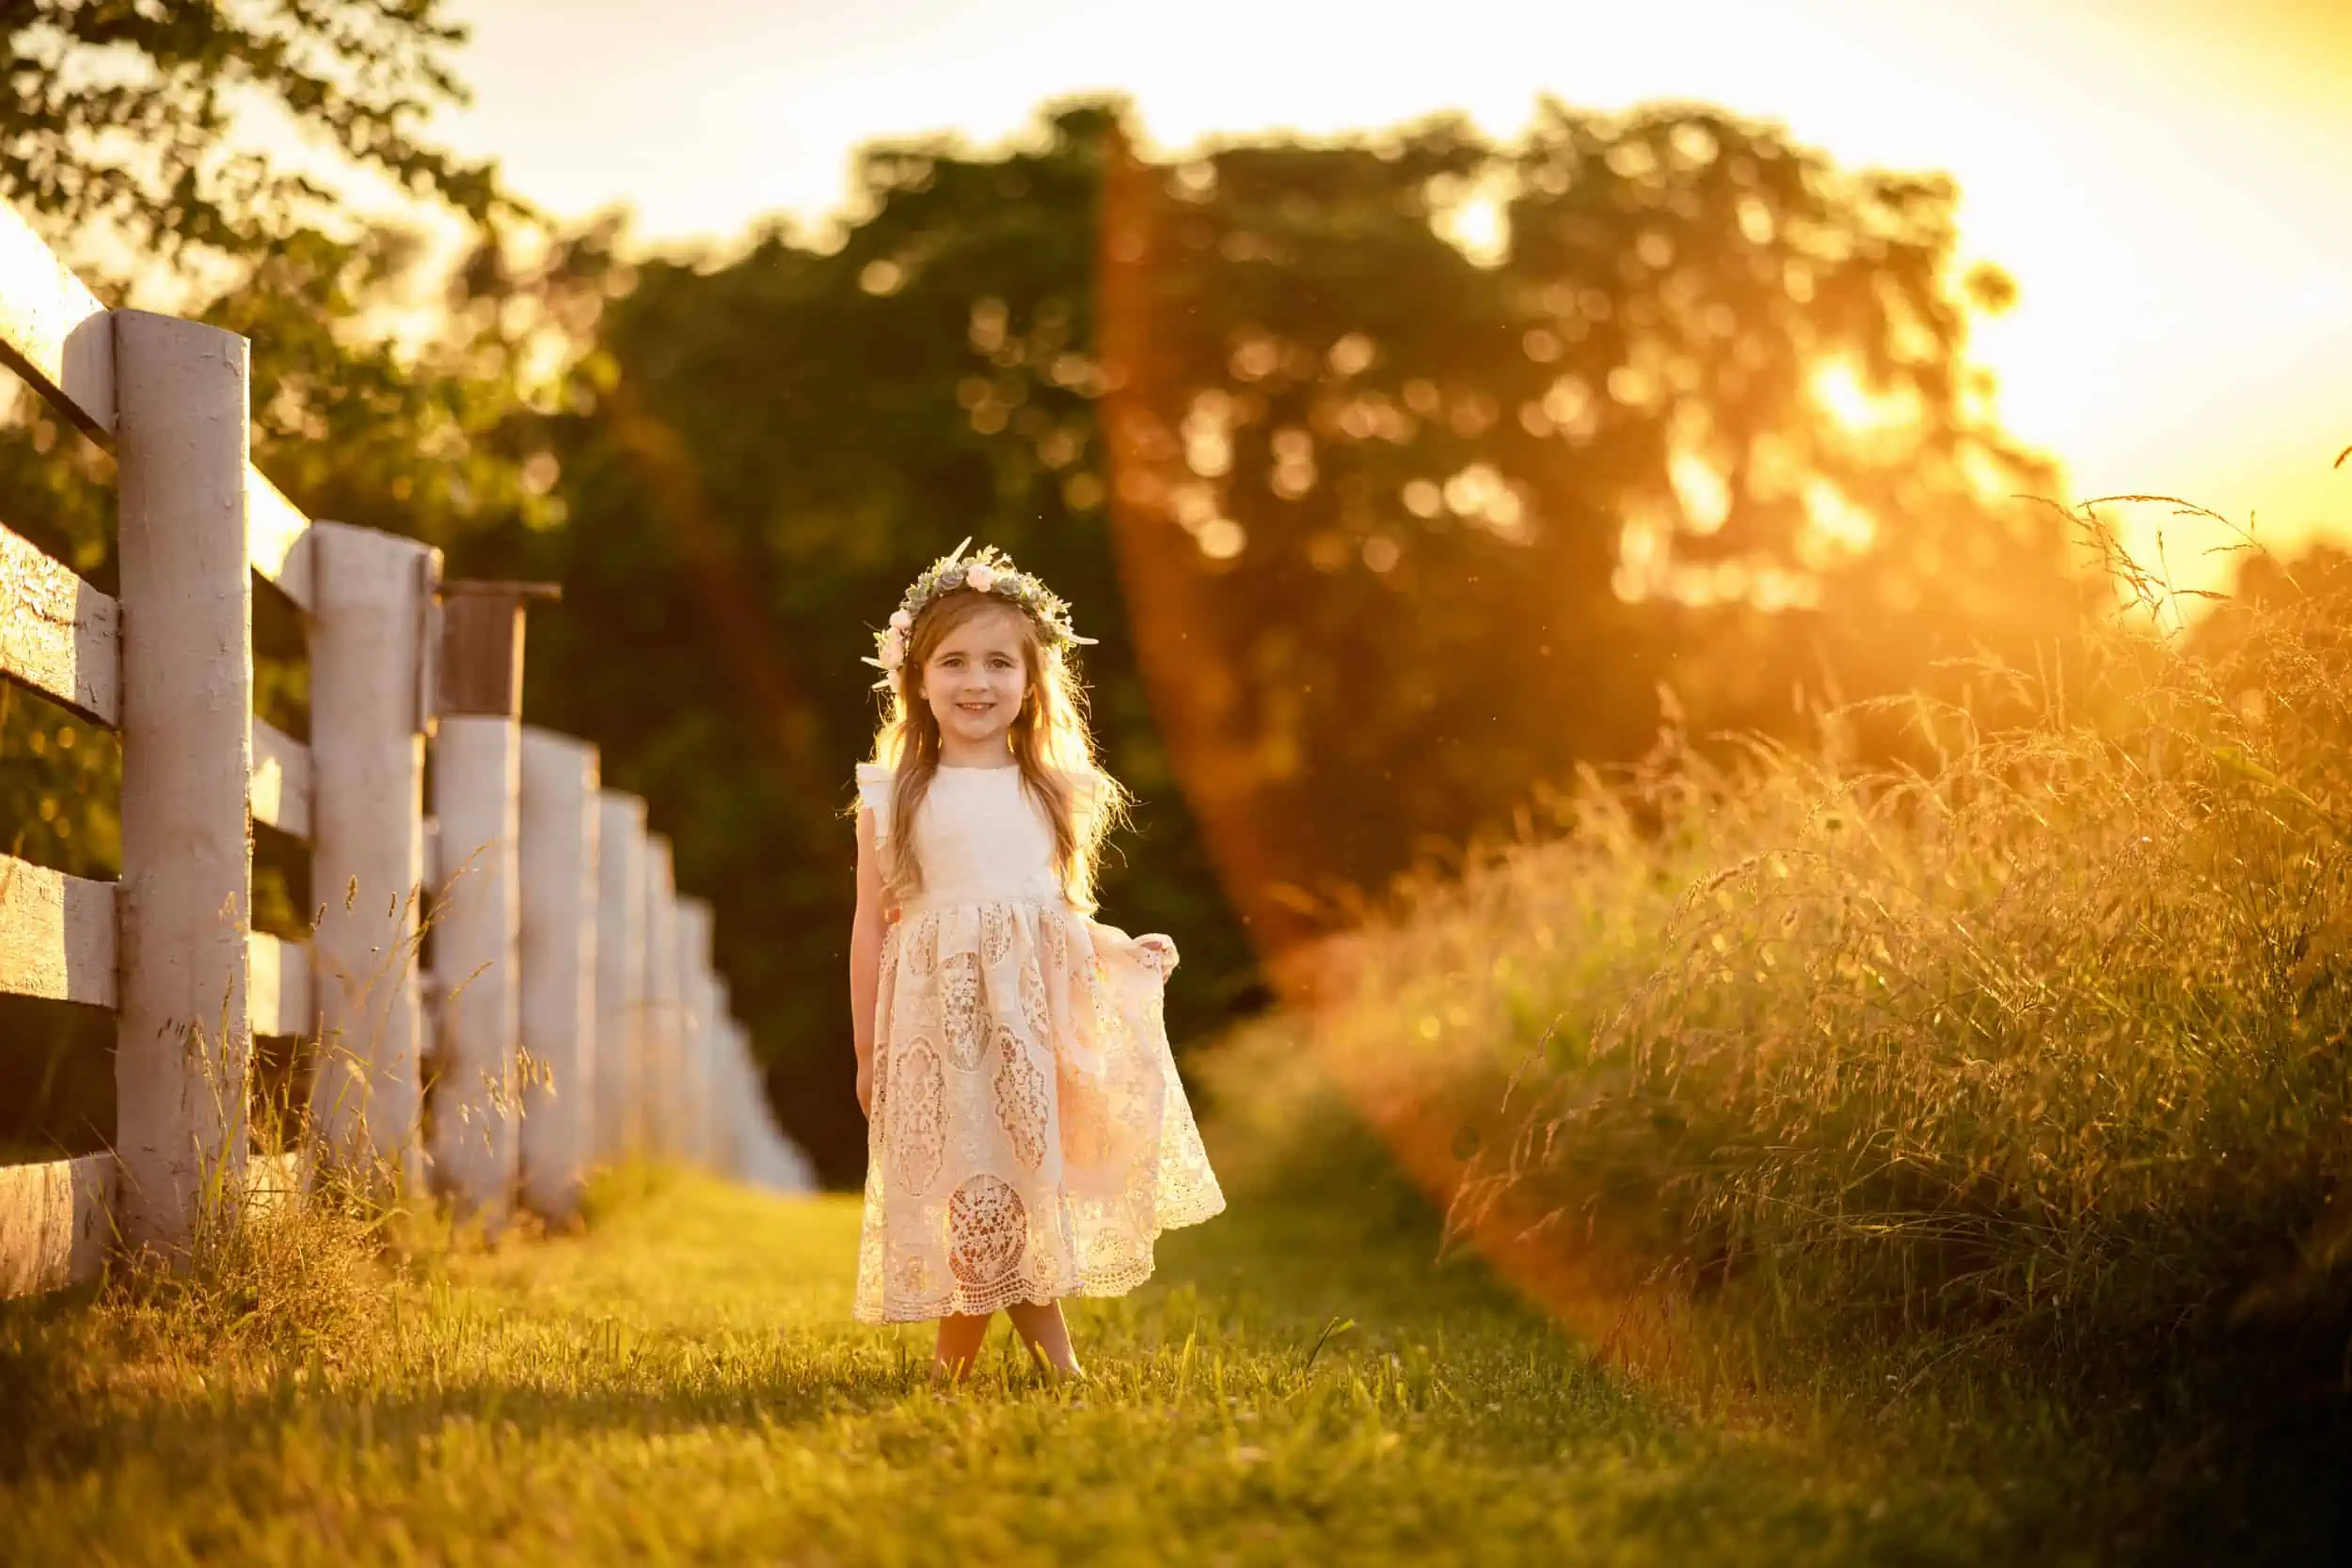 A little girl in a dress walking through a field at sunset.